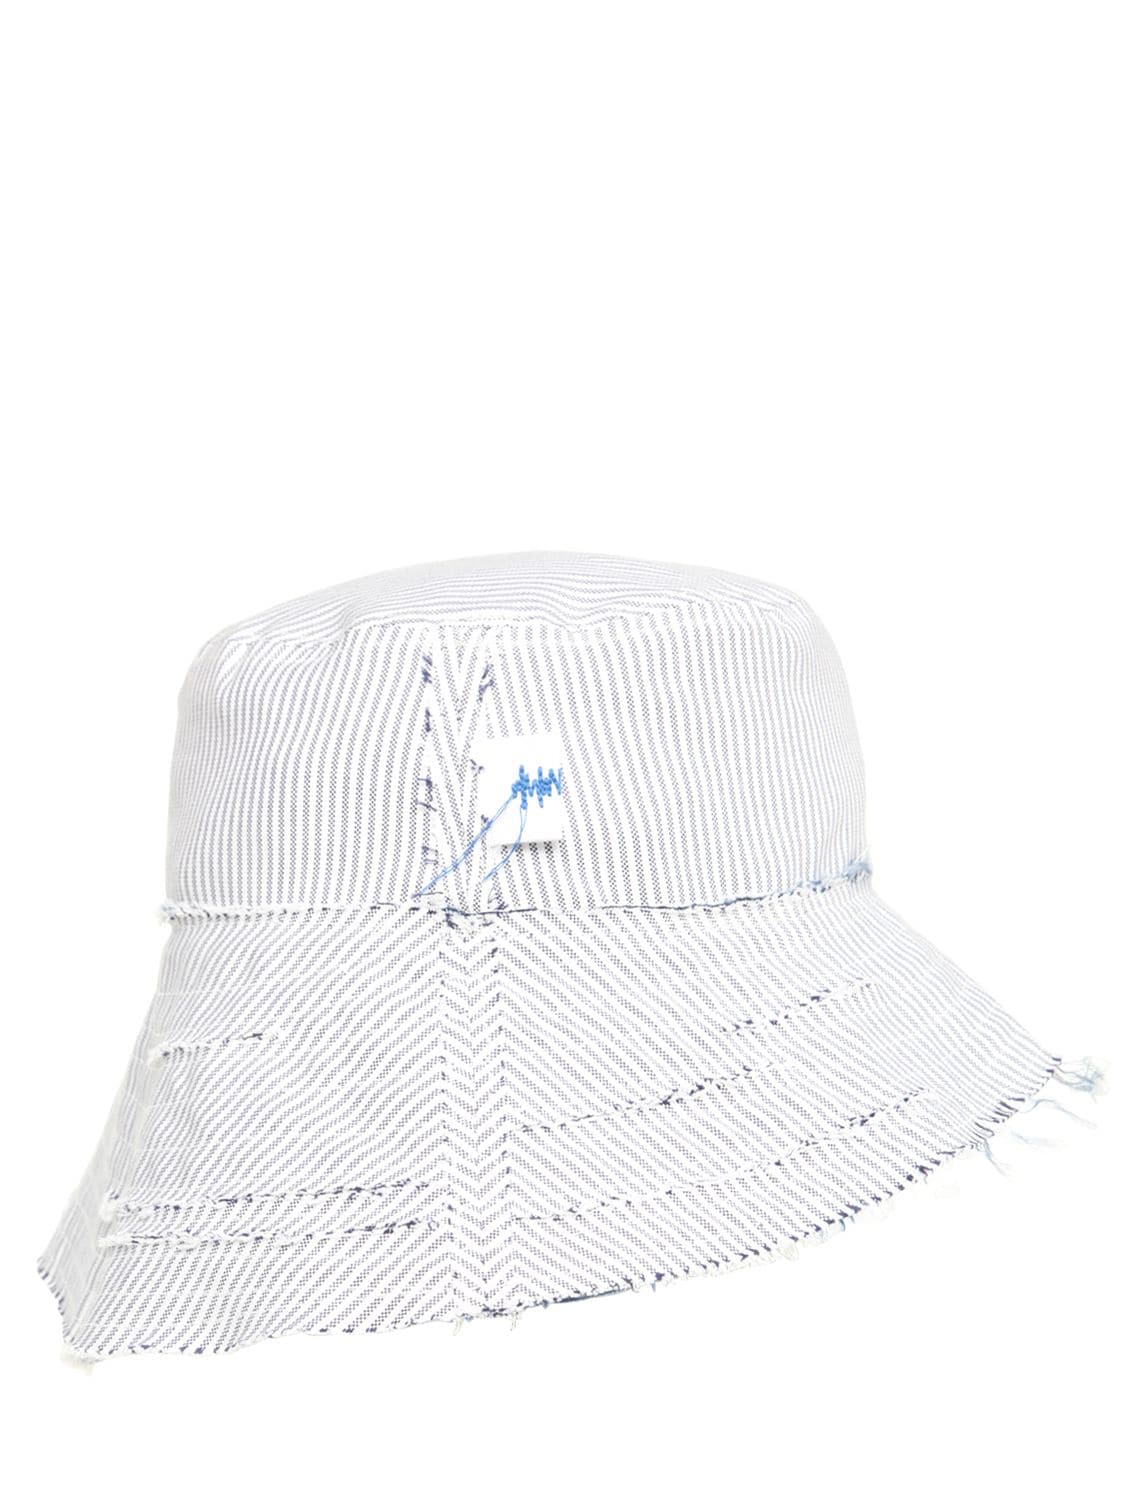 Ader Error 条纹棉质帆布渔夫帽 In White,blue